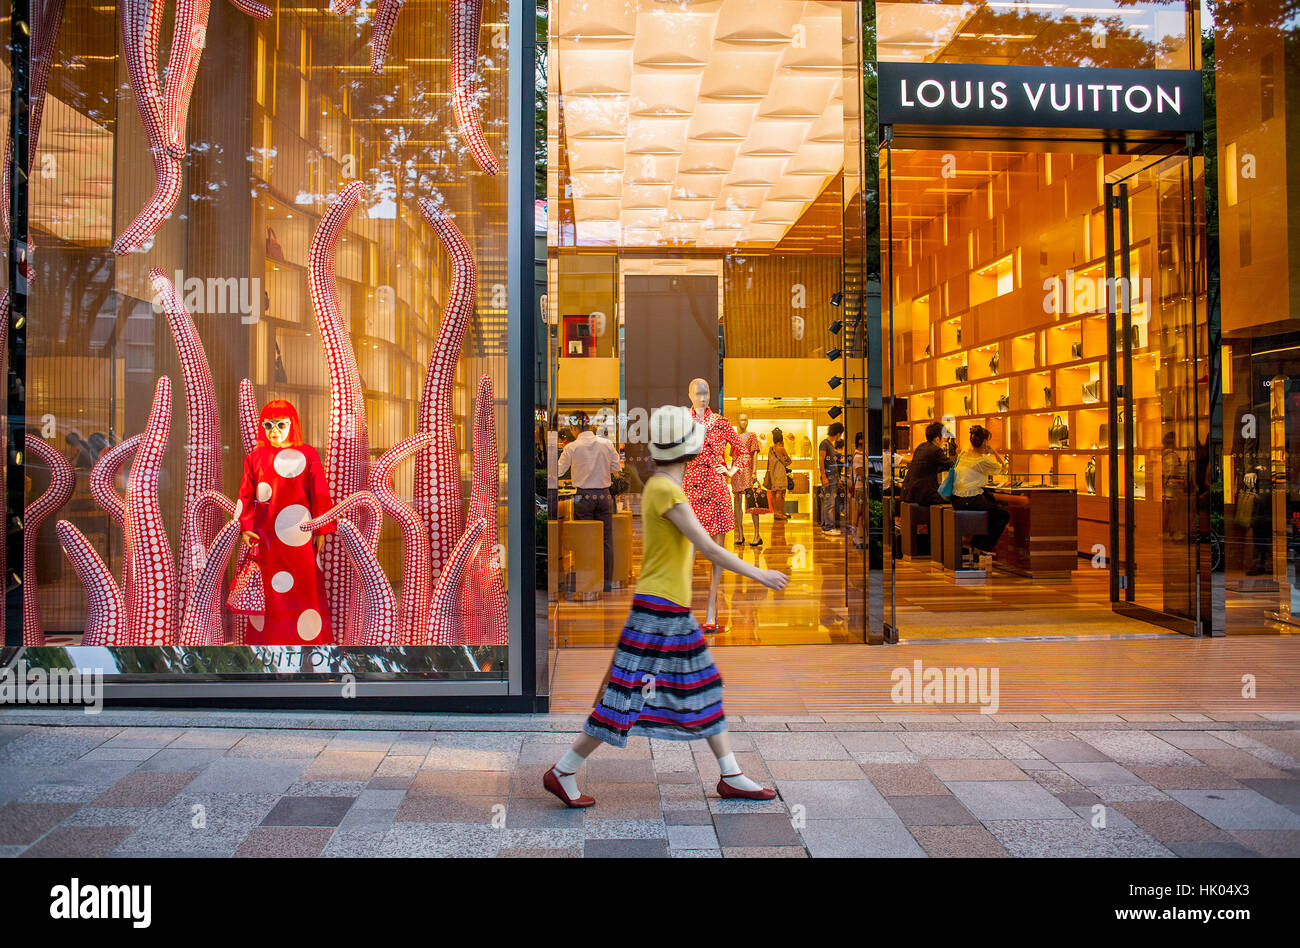 Louis Vuitton a ouvert une boutique à couper le souffle au Japon